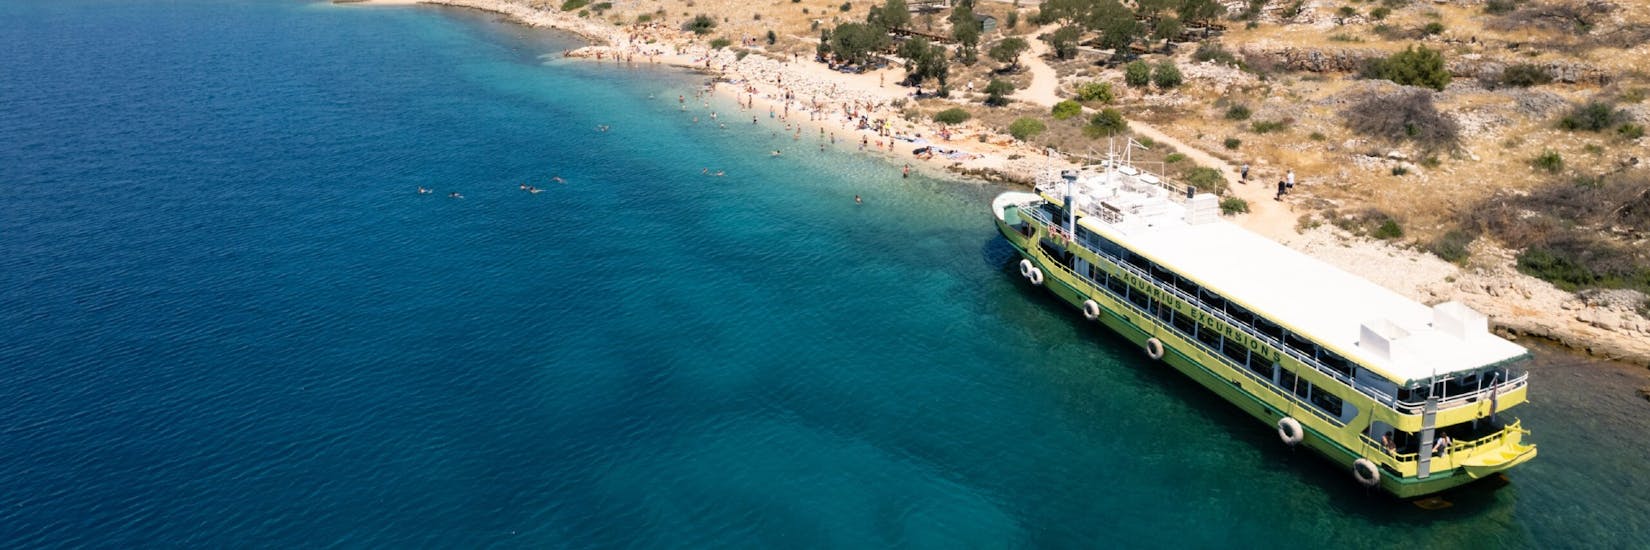 De boot van Aquarius Excursions Zadar voor een strand tijdens hun reis.